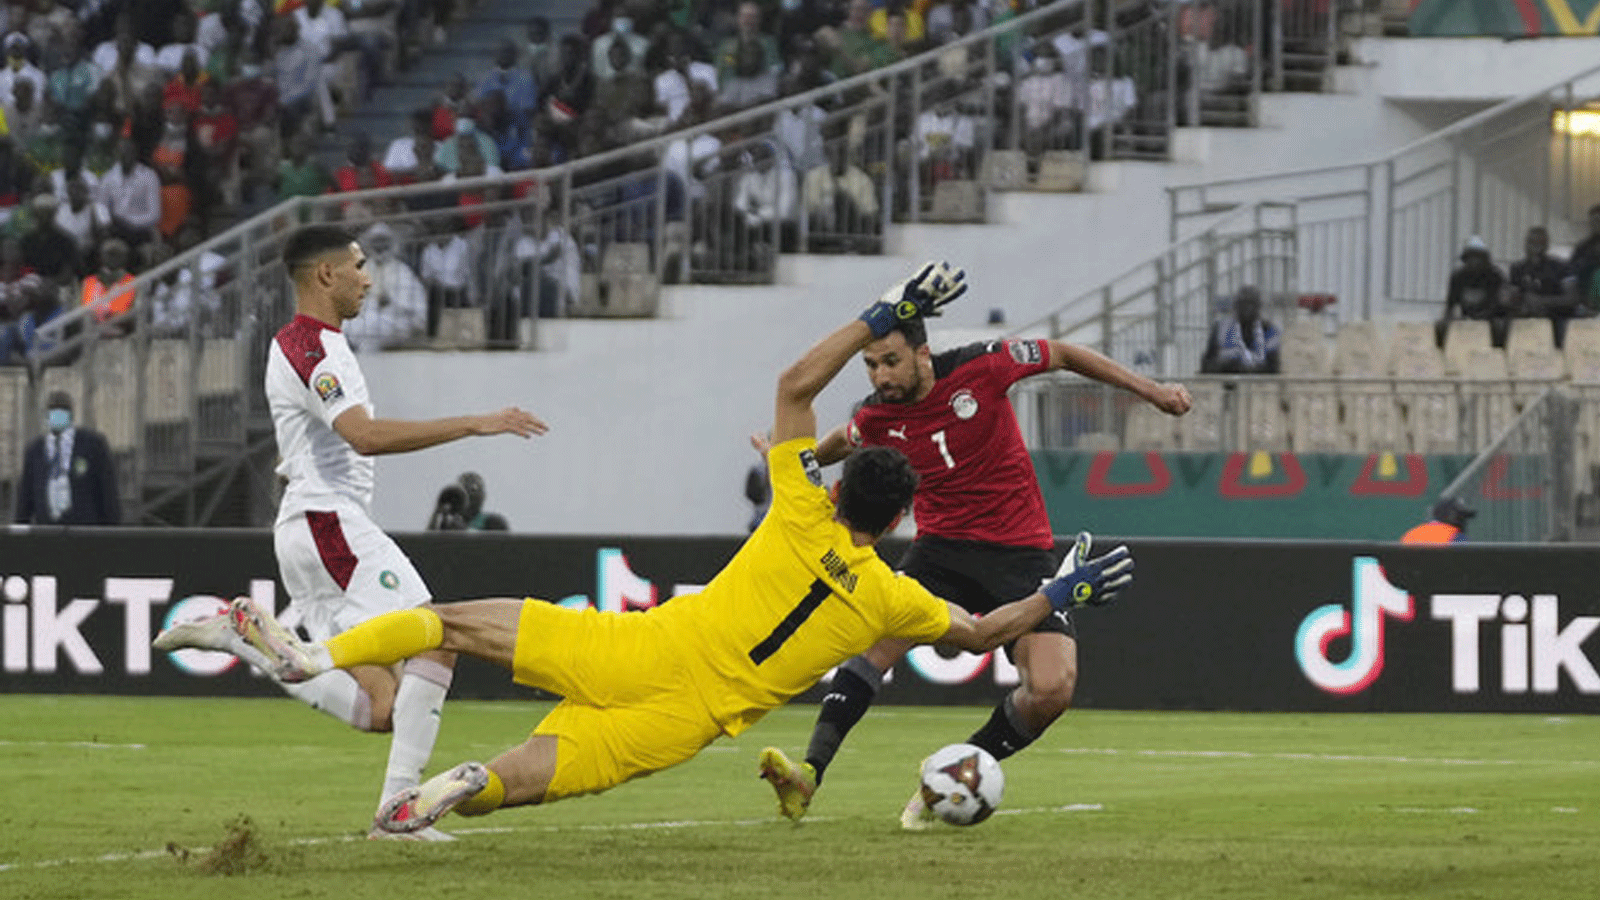 المصري محمود حسن تريزيجيه، إلى اليمين، سجل هدفا في مرمى حارس مرمى المغرب ياسين بونو، في المقدمة. خلال مباراة ربع نهائي كأس آسيا 2022 لكرة القدم بين مصر والمغرب في 30 يناير / كانون الثاني 2022.